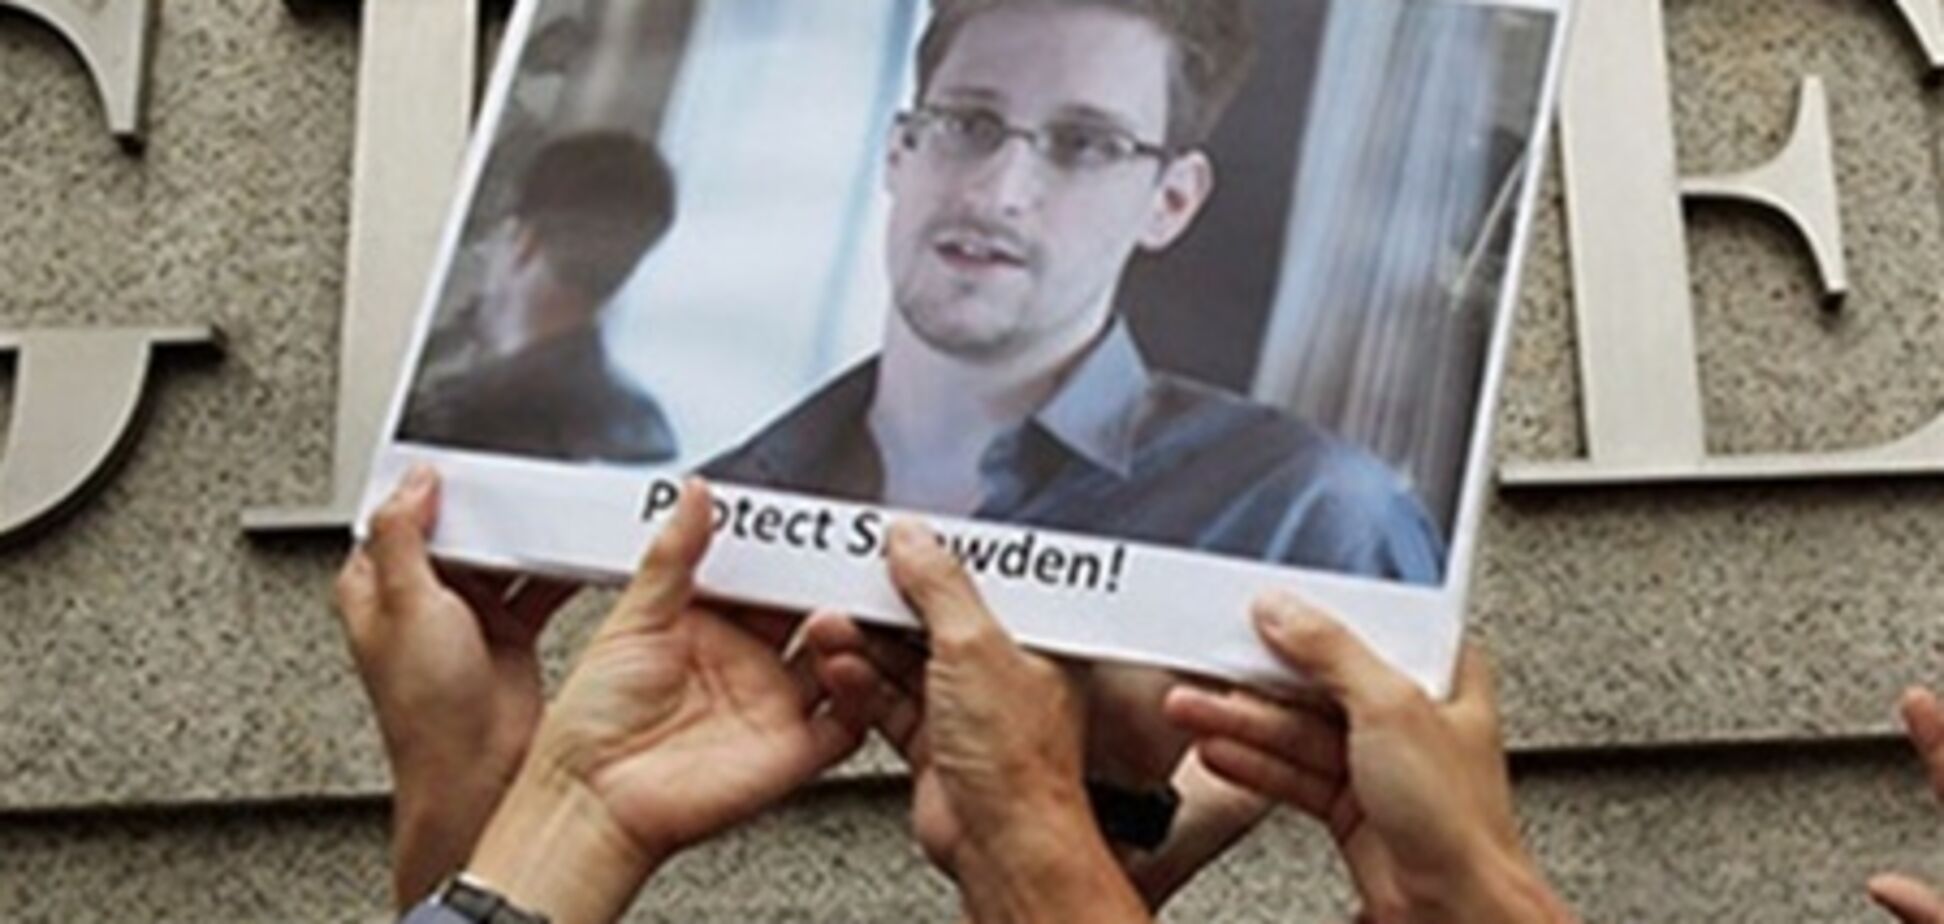 Эквадор еще не рассматривал просьбу Сноудена об убежище